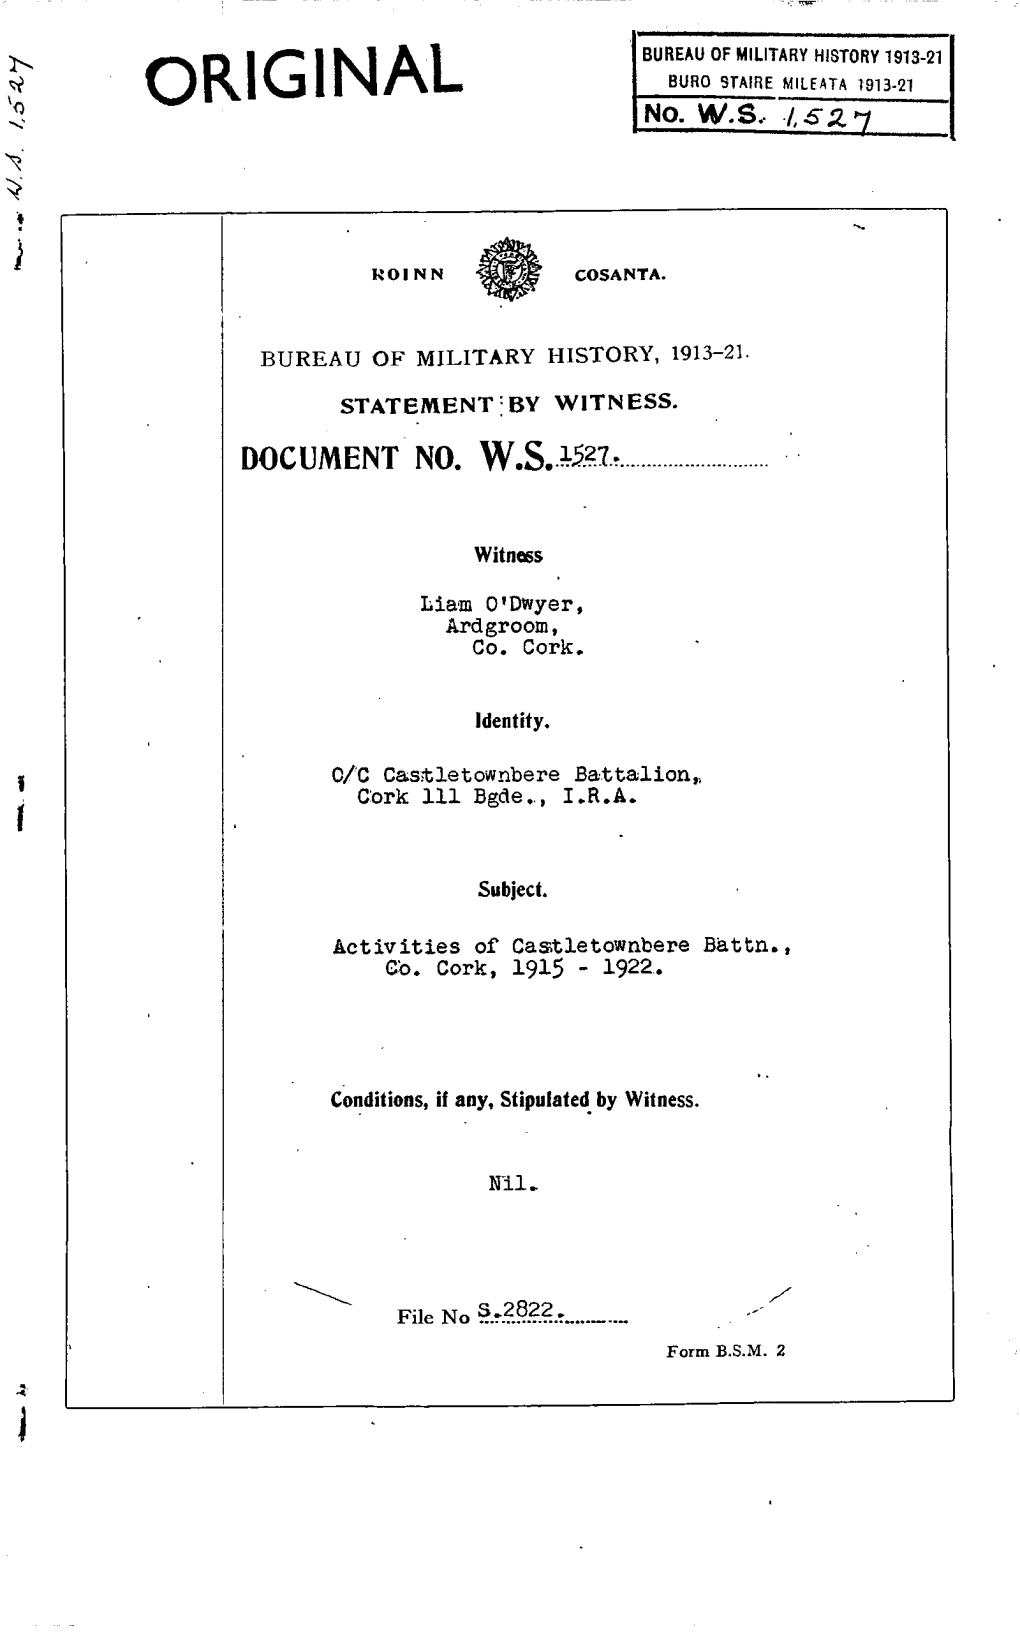 ROINN COSANTA. BUREAU of MILITARY HISTORY, 1913-21. STATEMENT by WITNESS. DOCUMENT NO. W.S. 1527. Witness Liam O'dwyer, Ardgroom